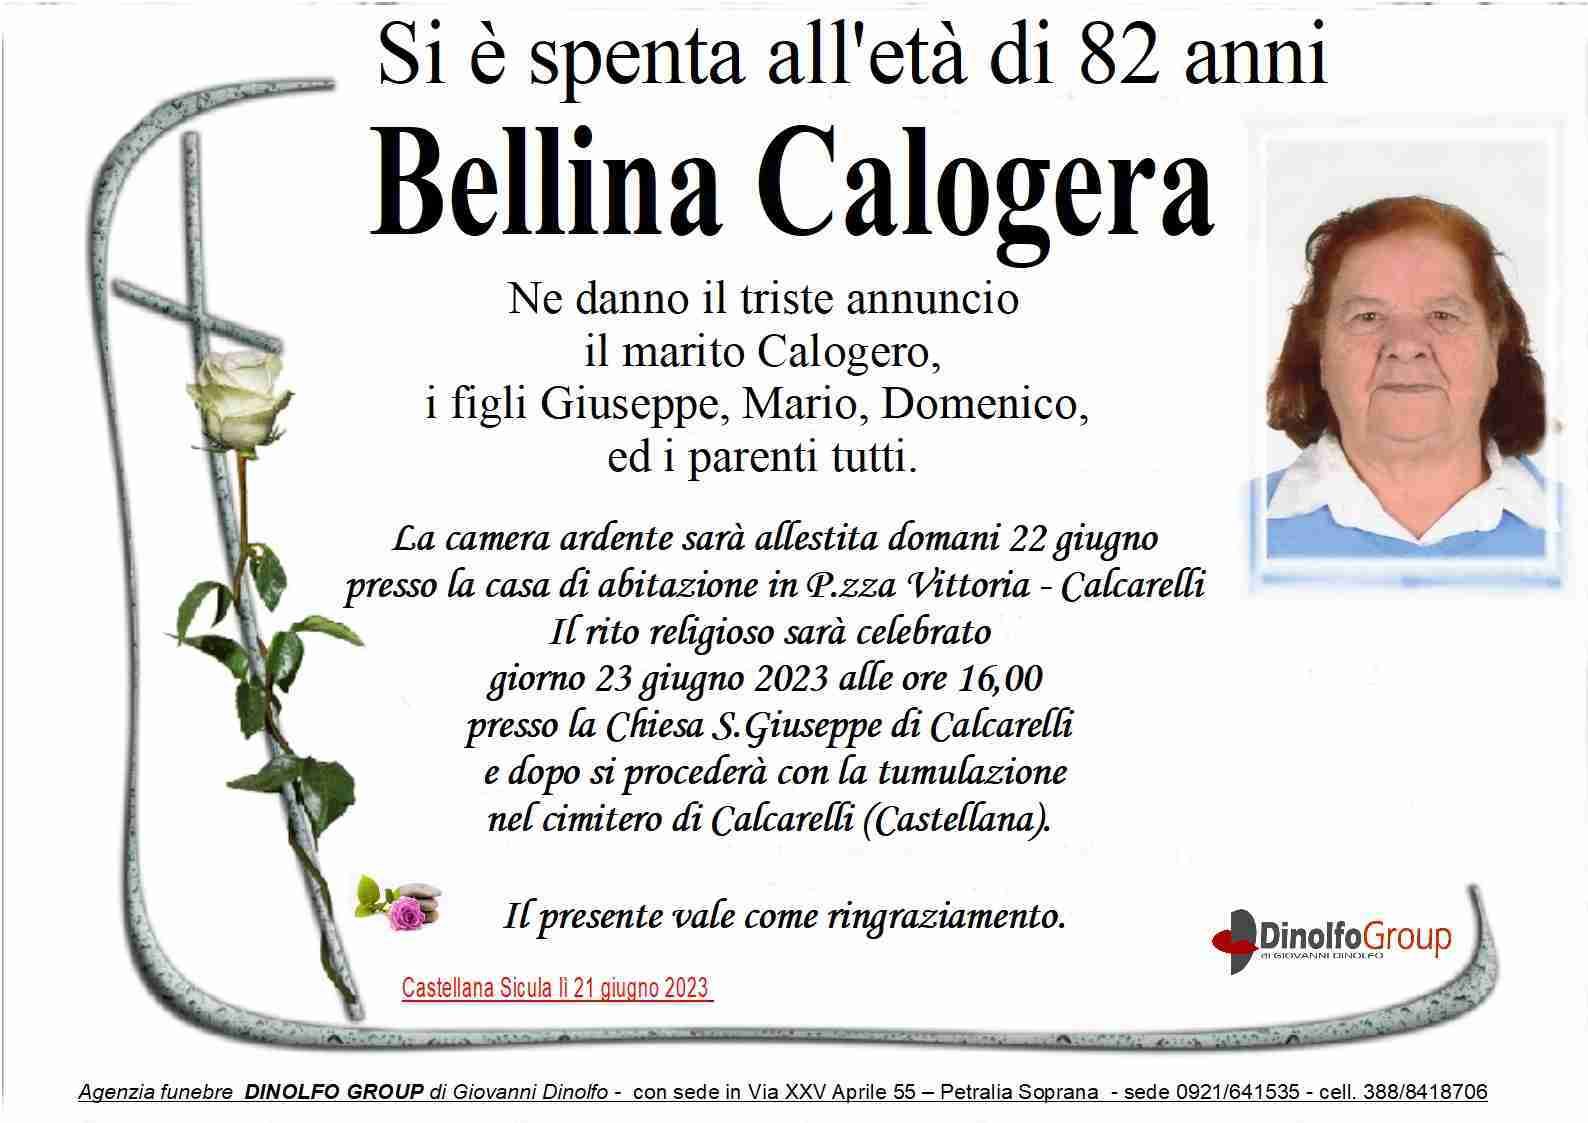 Calogera Bellina